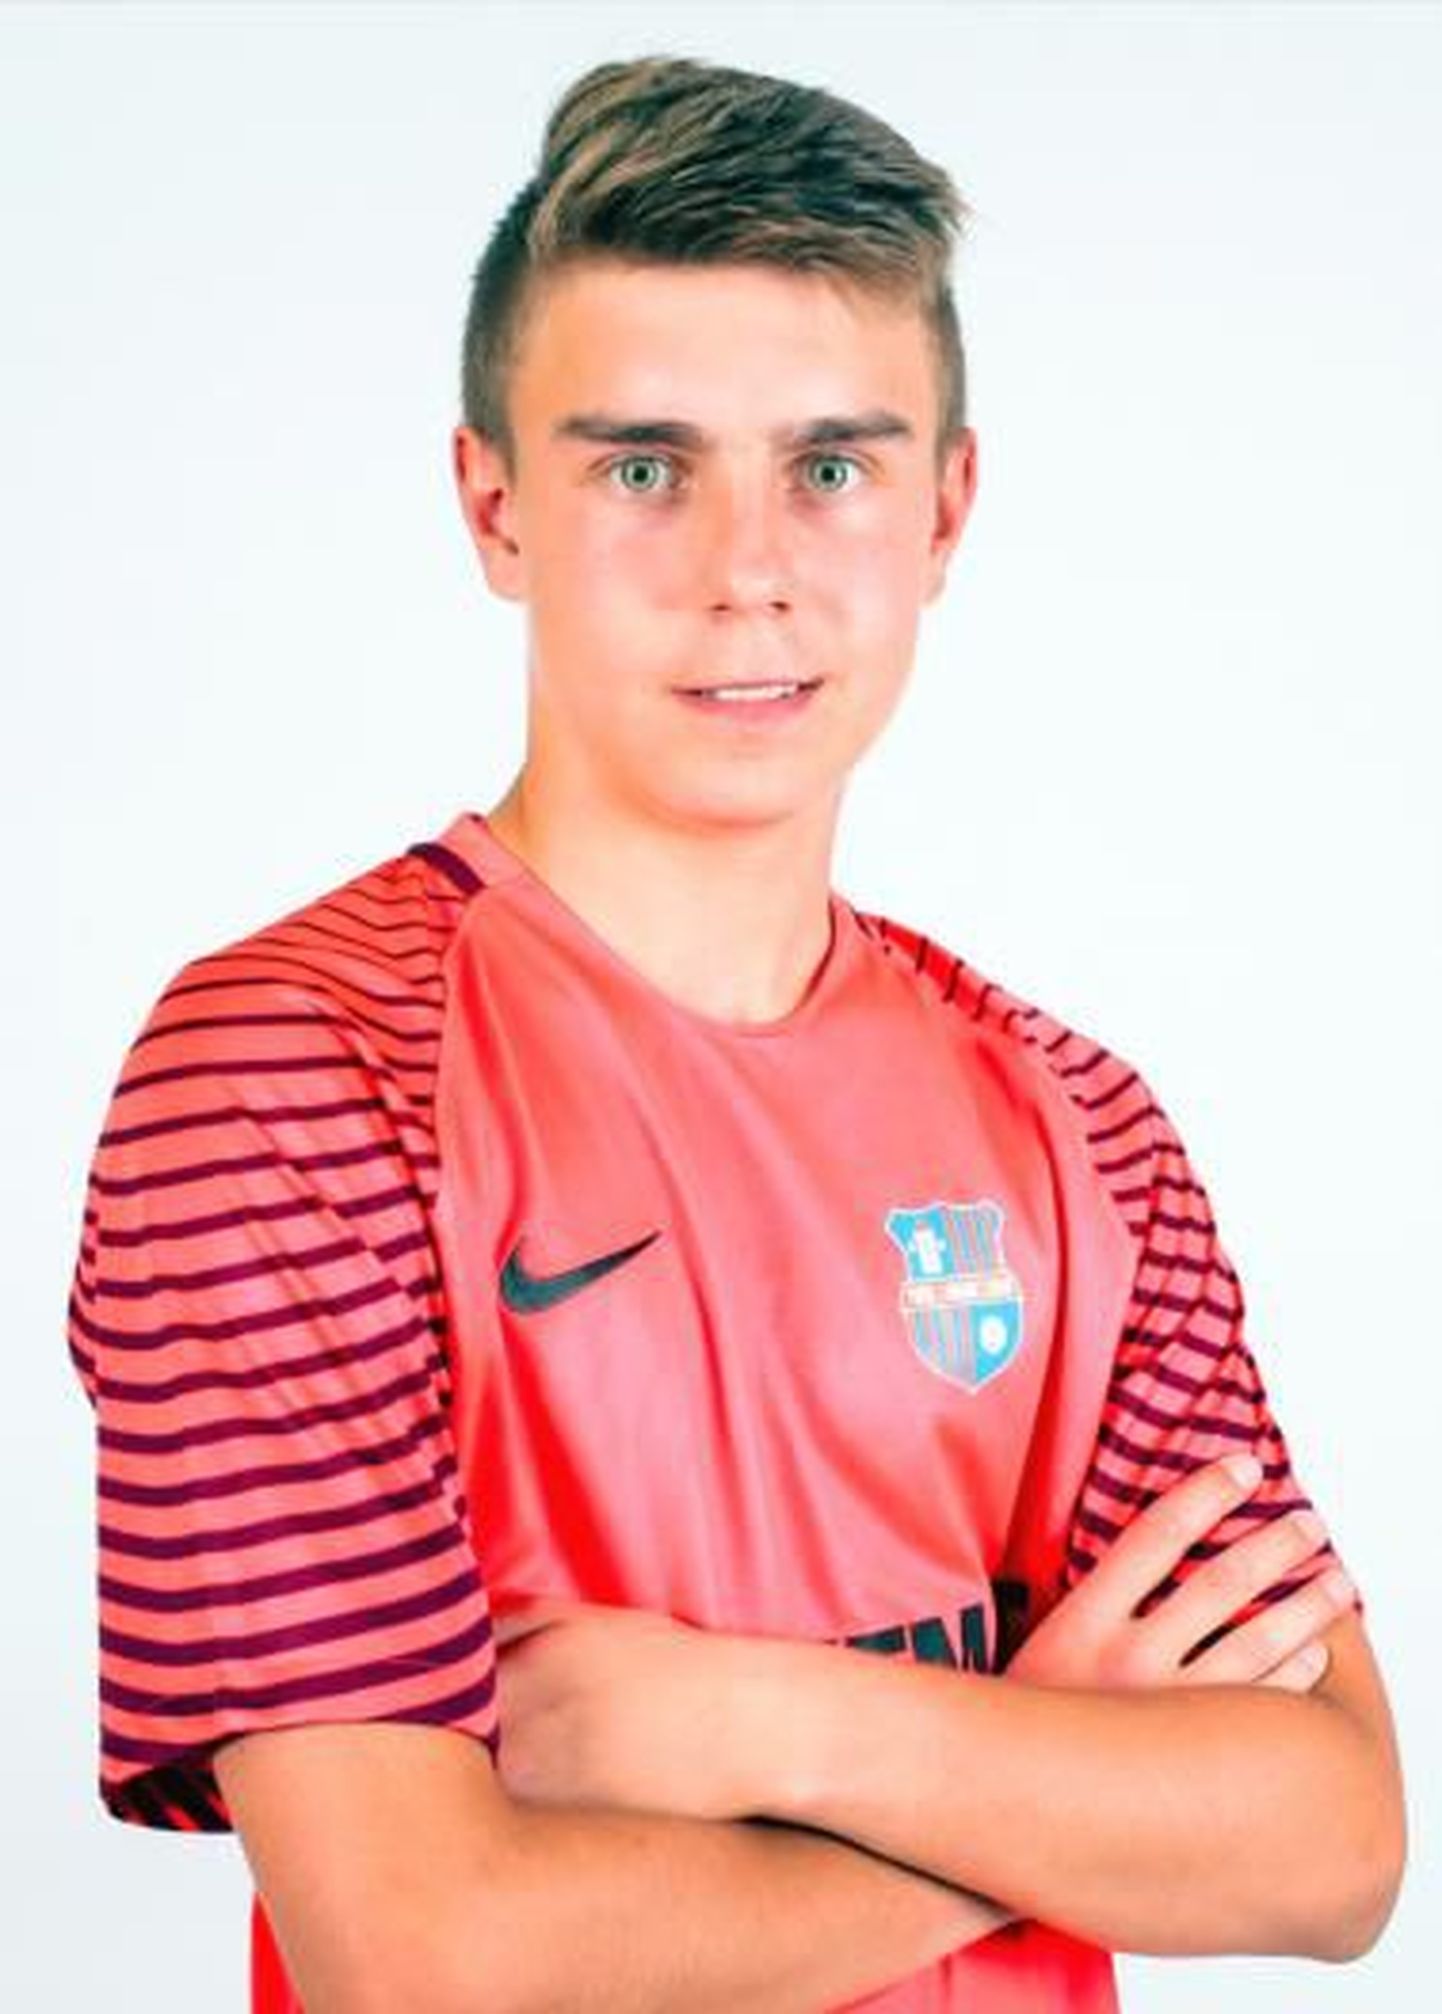 Вратарь сборной Эстонии U19 Рене Мерило - воспитанник кохтла-ярвеского ФК "Ярве", который сейчас входит в Пайдескую городскую команду.